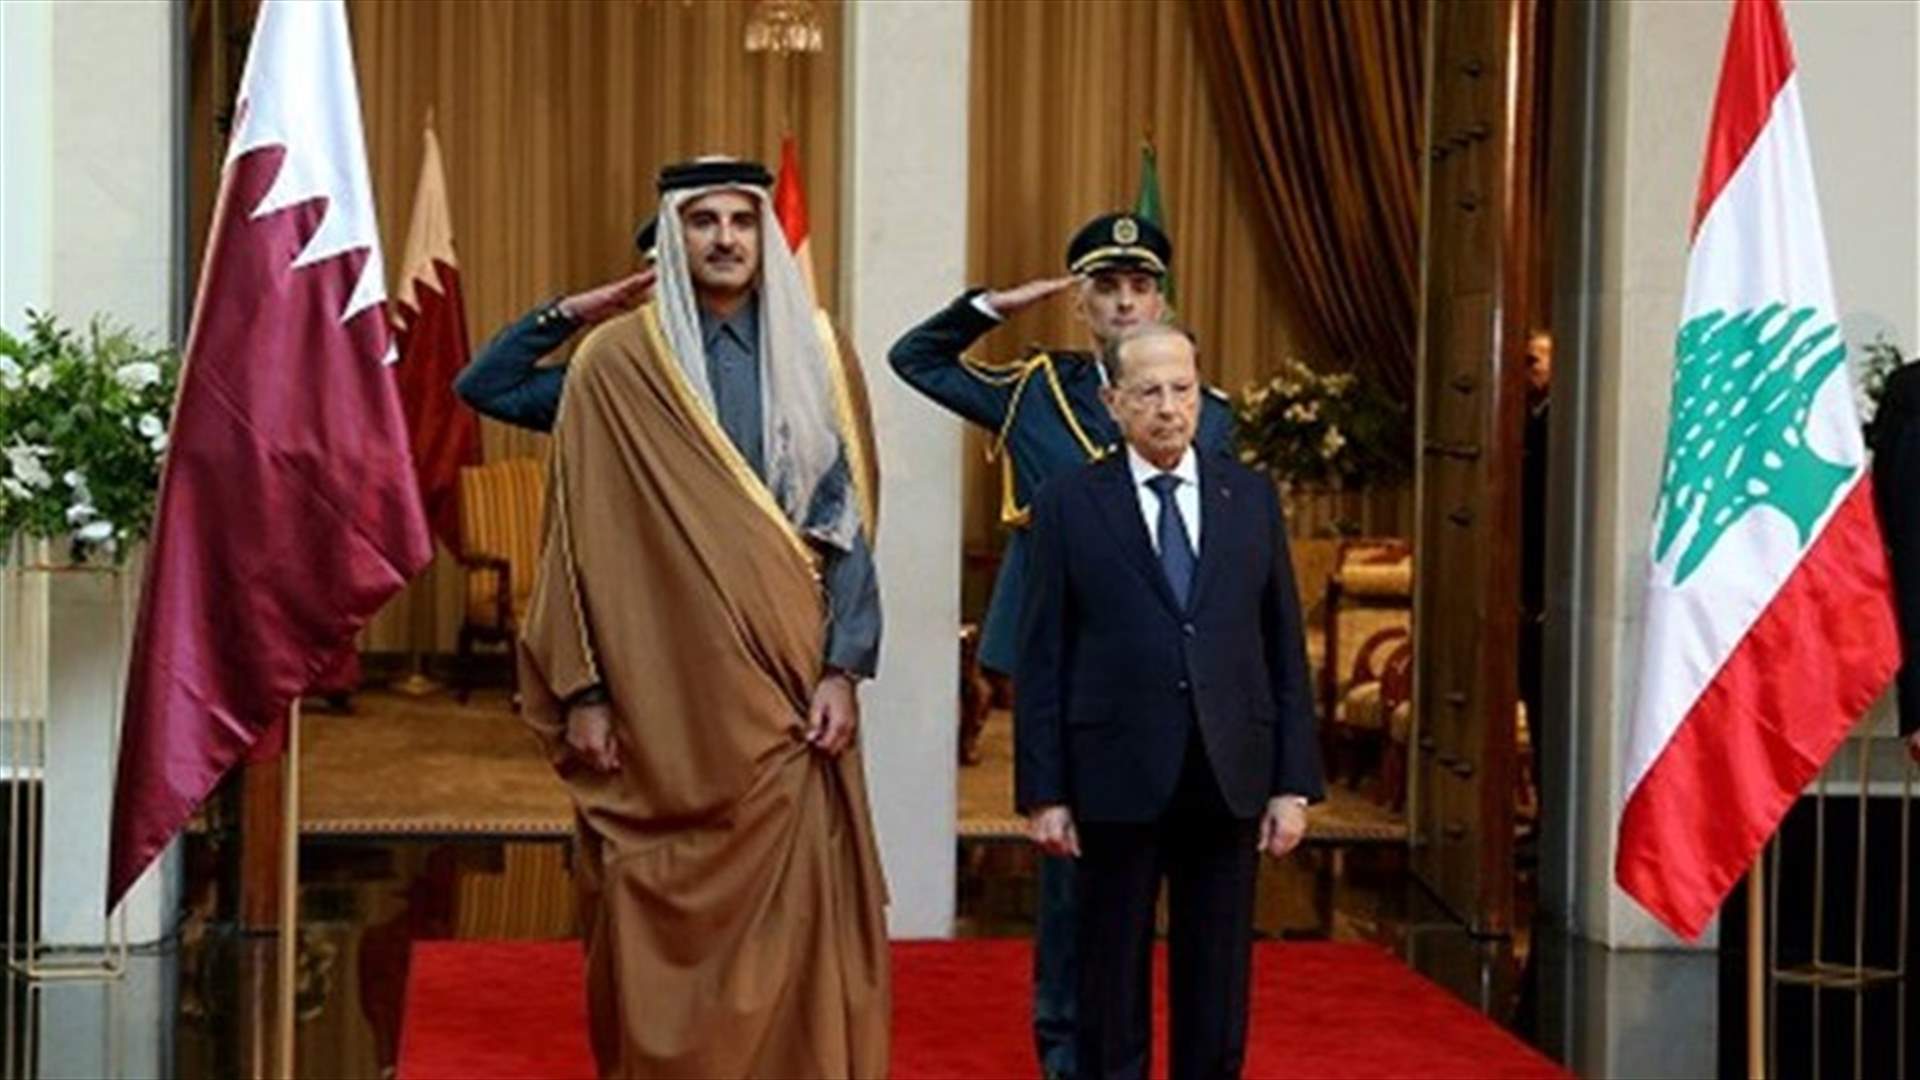 وكالة الانباء القطرية: أمير قطر تلقى اتصالا من الرئيس عون... وهذا ما أكده له